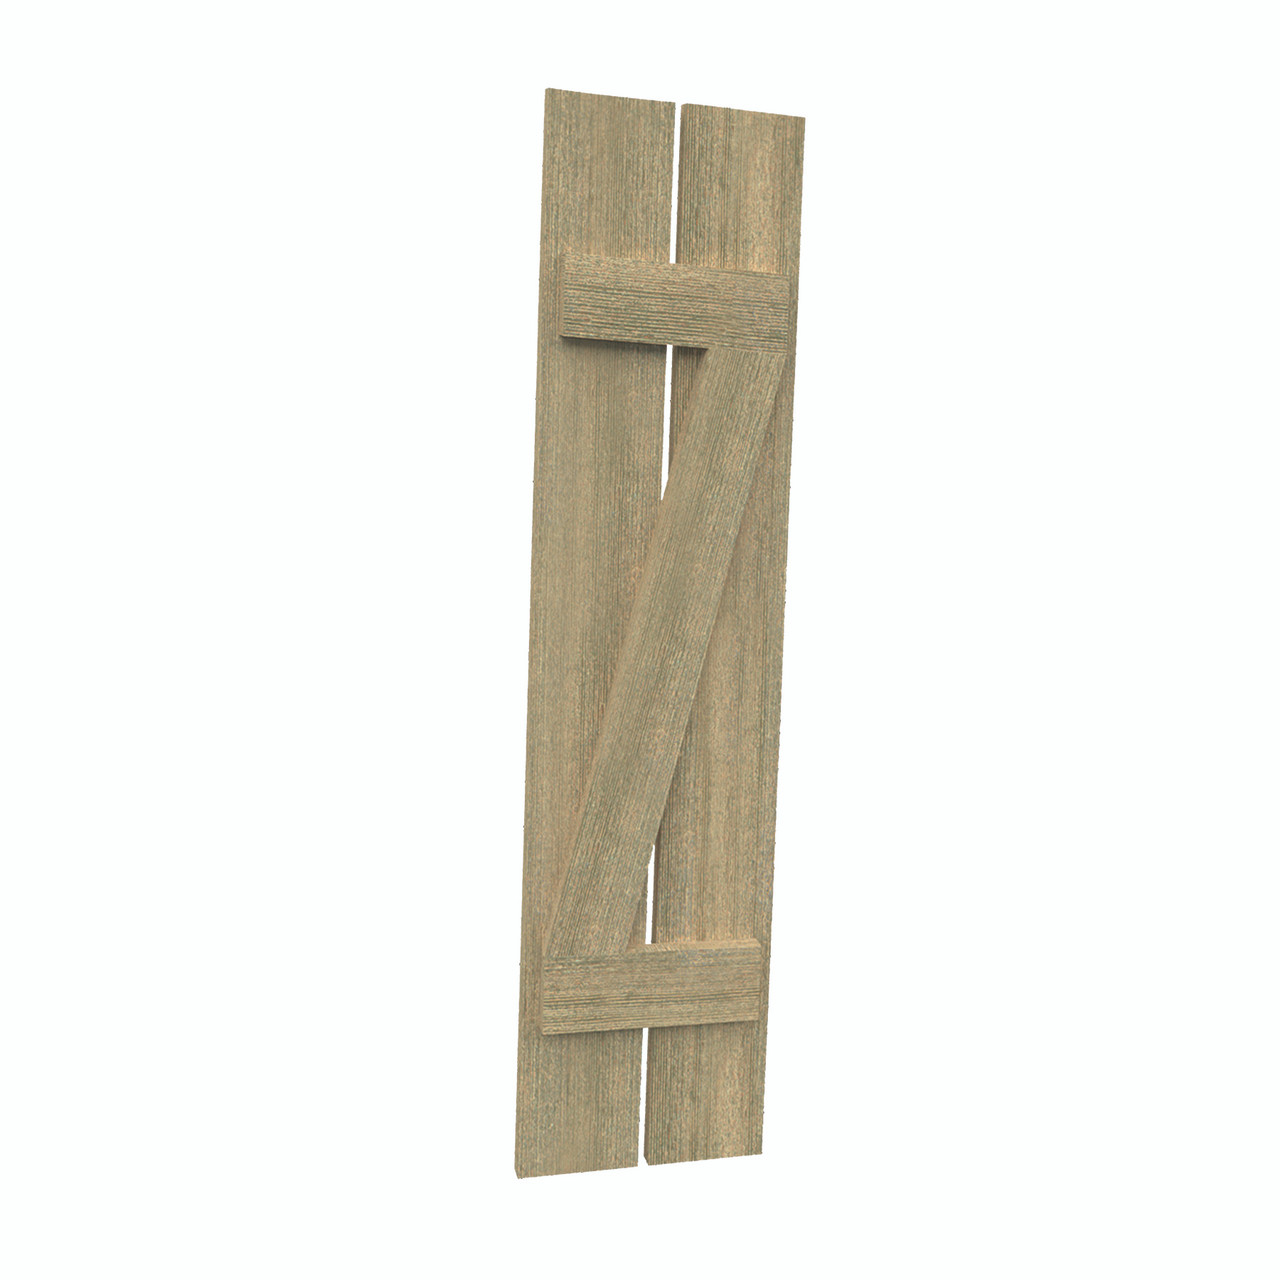 12 inch by 35 inch Plank Shutter with 2-Plank, Z-Batten